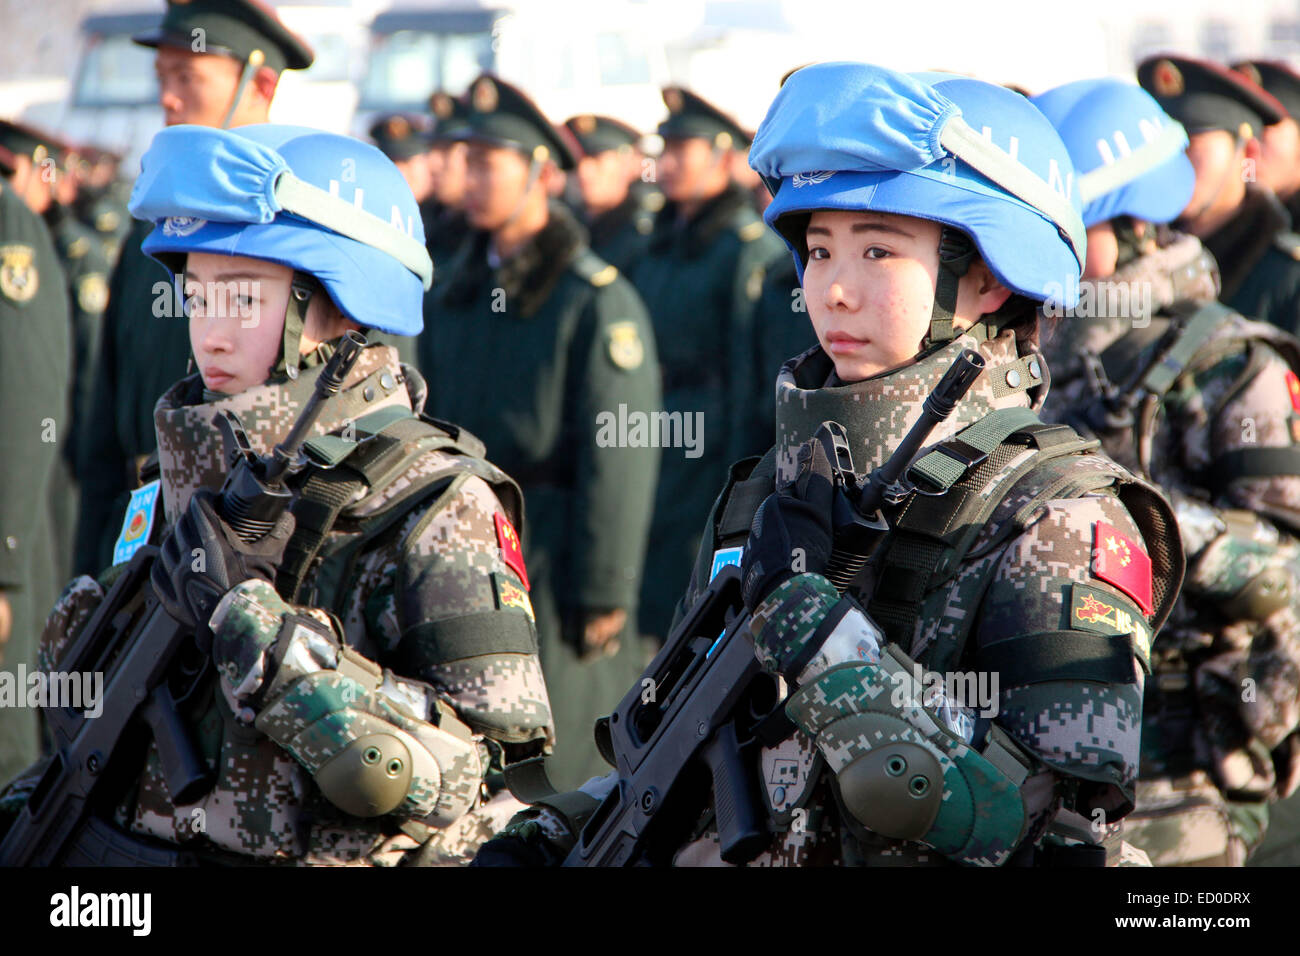 Laiyang, Shandong, Cina. 22 dic 2014. Il Cinese prima di mantenimento della pace del battaglione di fanteria andrà al sud Sudan per la missione di mantenimento della pace in Laiyang, Shandong in Cina il 22 dicembre, 2014. Credito: TopPhoto/Alamy Live News Foto Stock